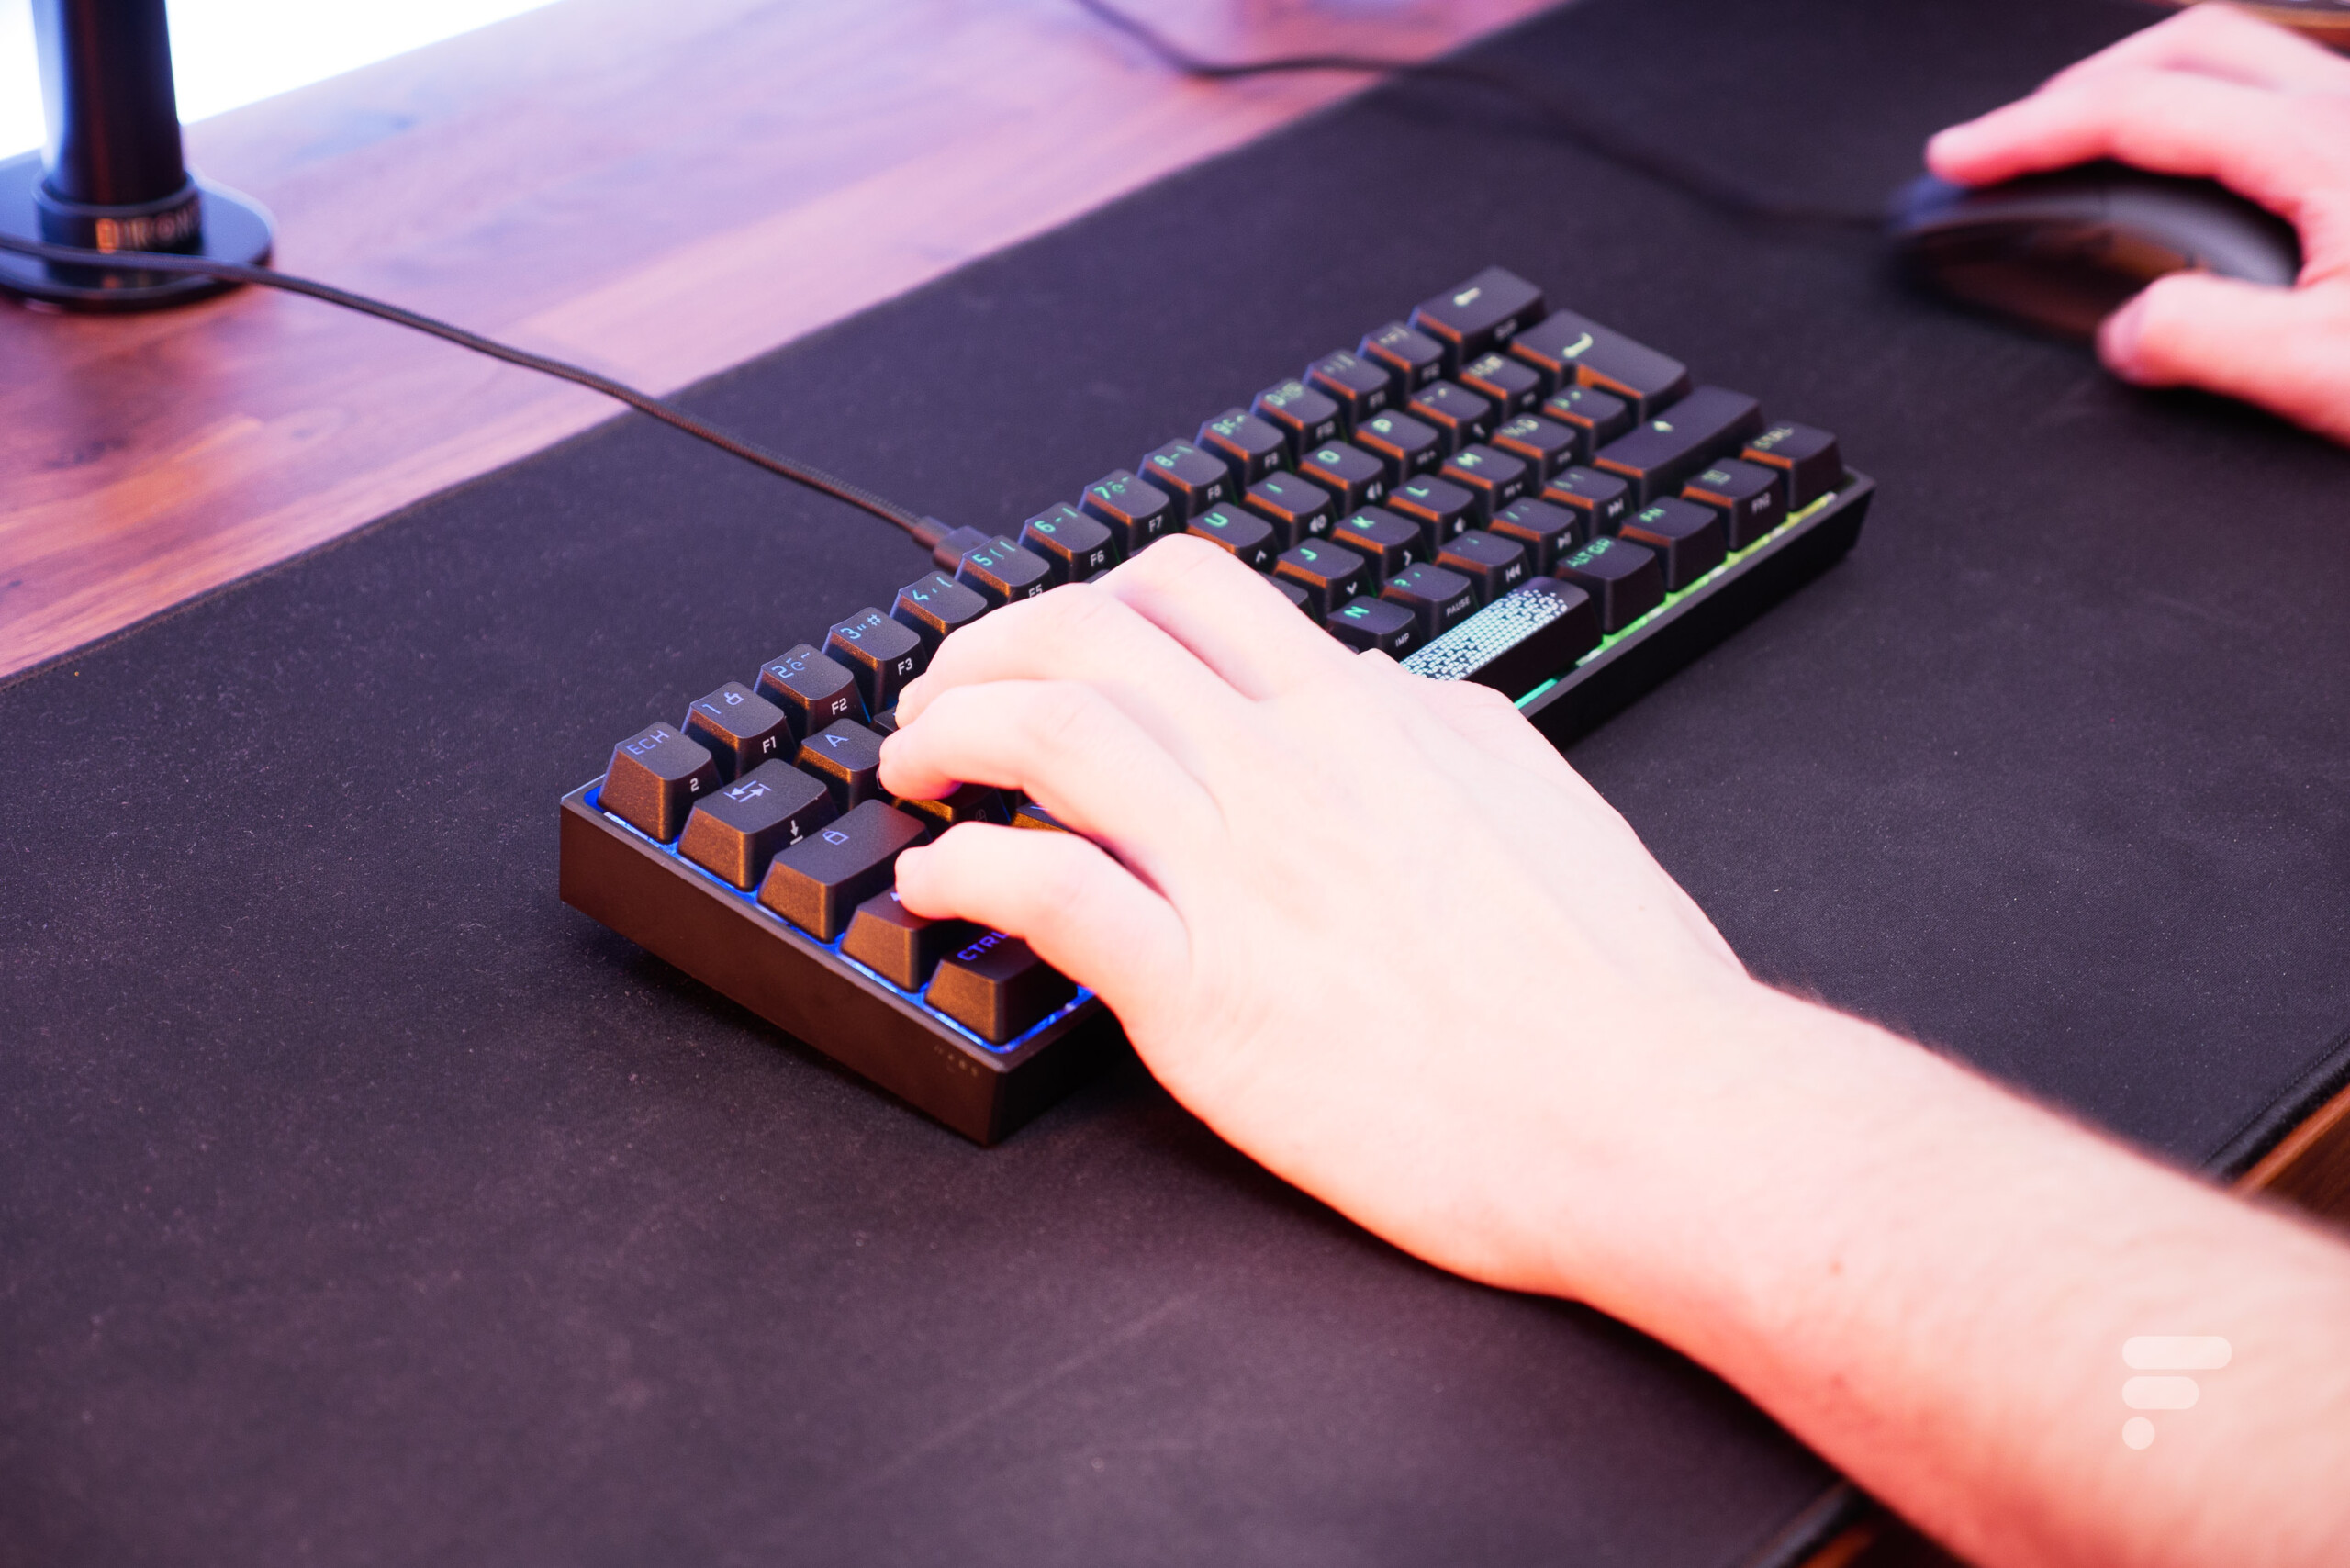 Corsair s'attaque aux claviers mécaniques au format 60 % avec son K65 RGB  Mini - Les Numériques